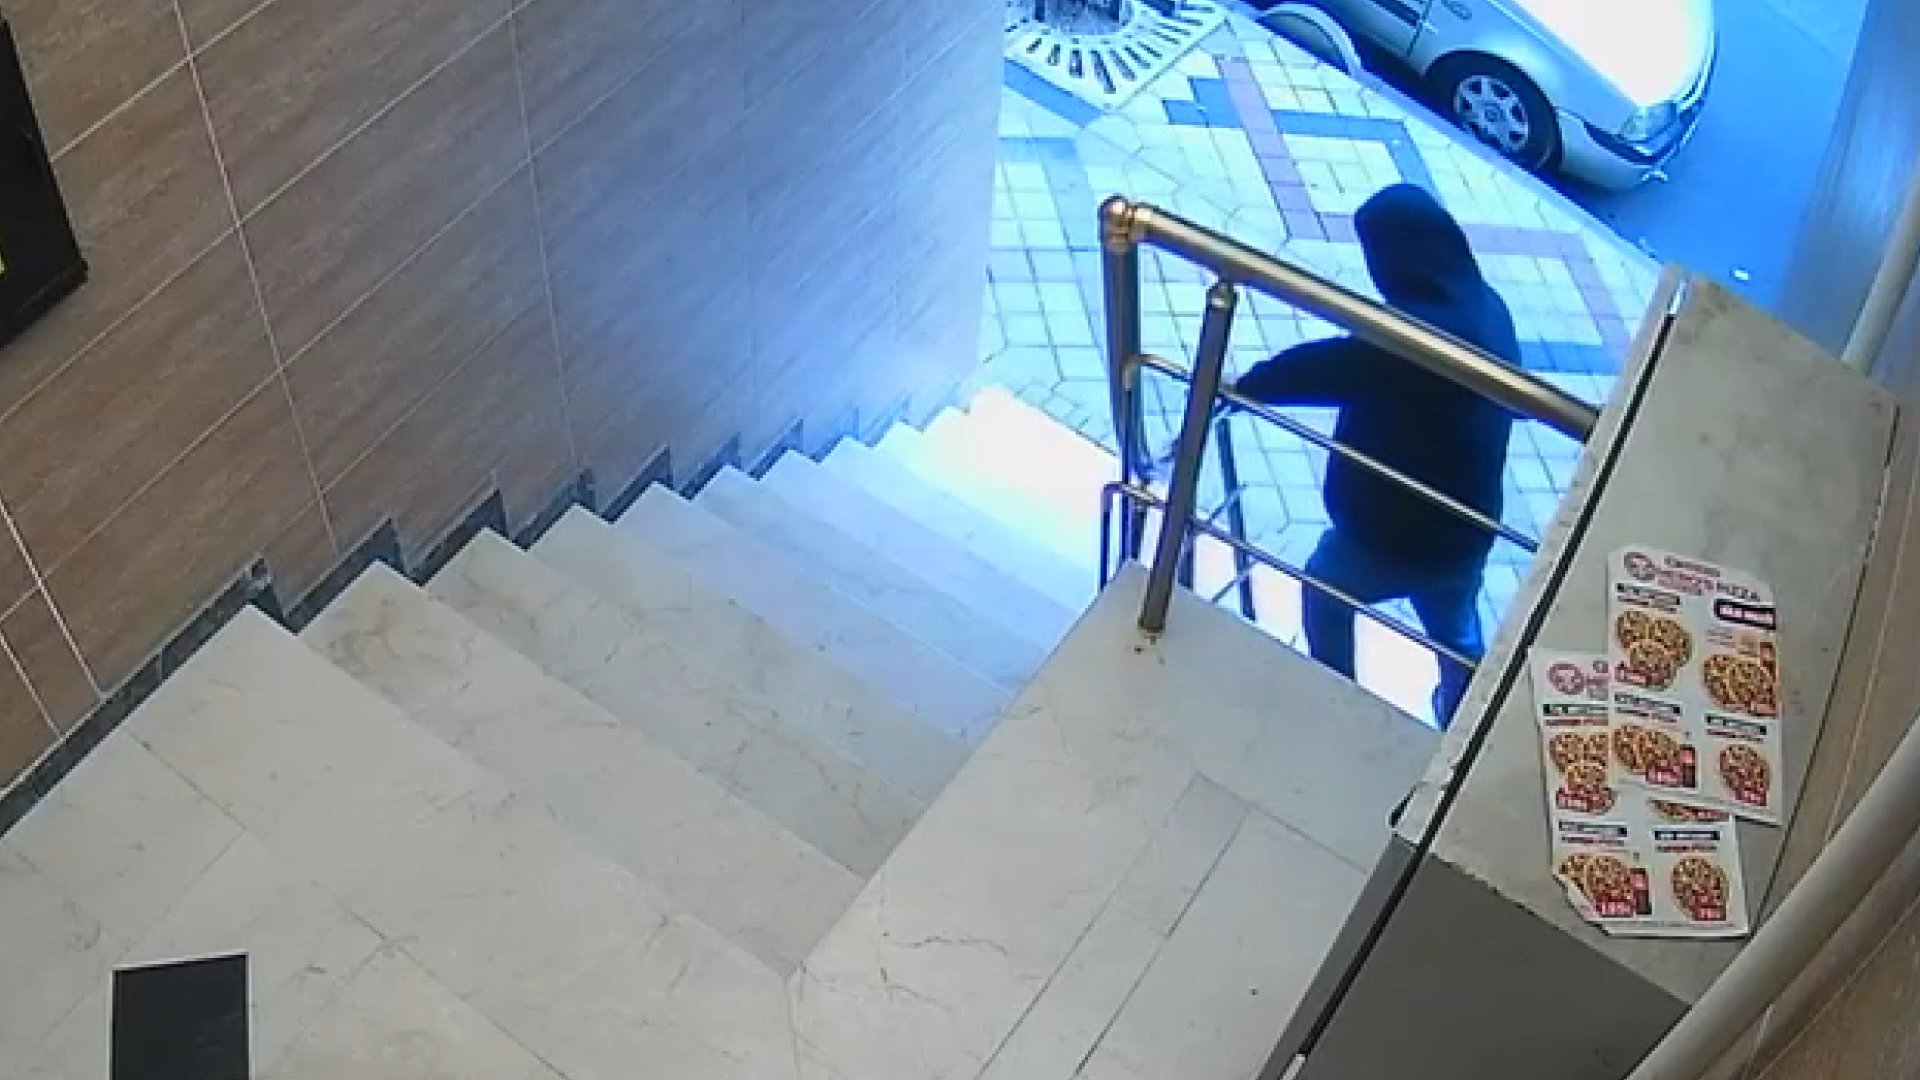 Apartmanın merdiven korkuluklarını sökerek çalan şüpheli kamerada